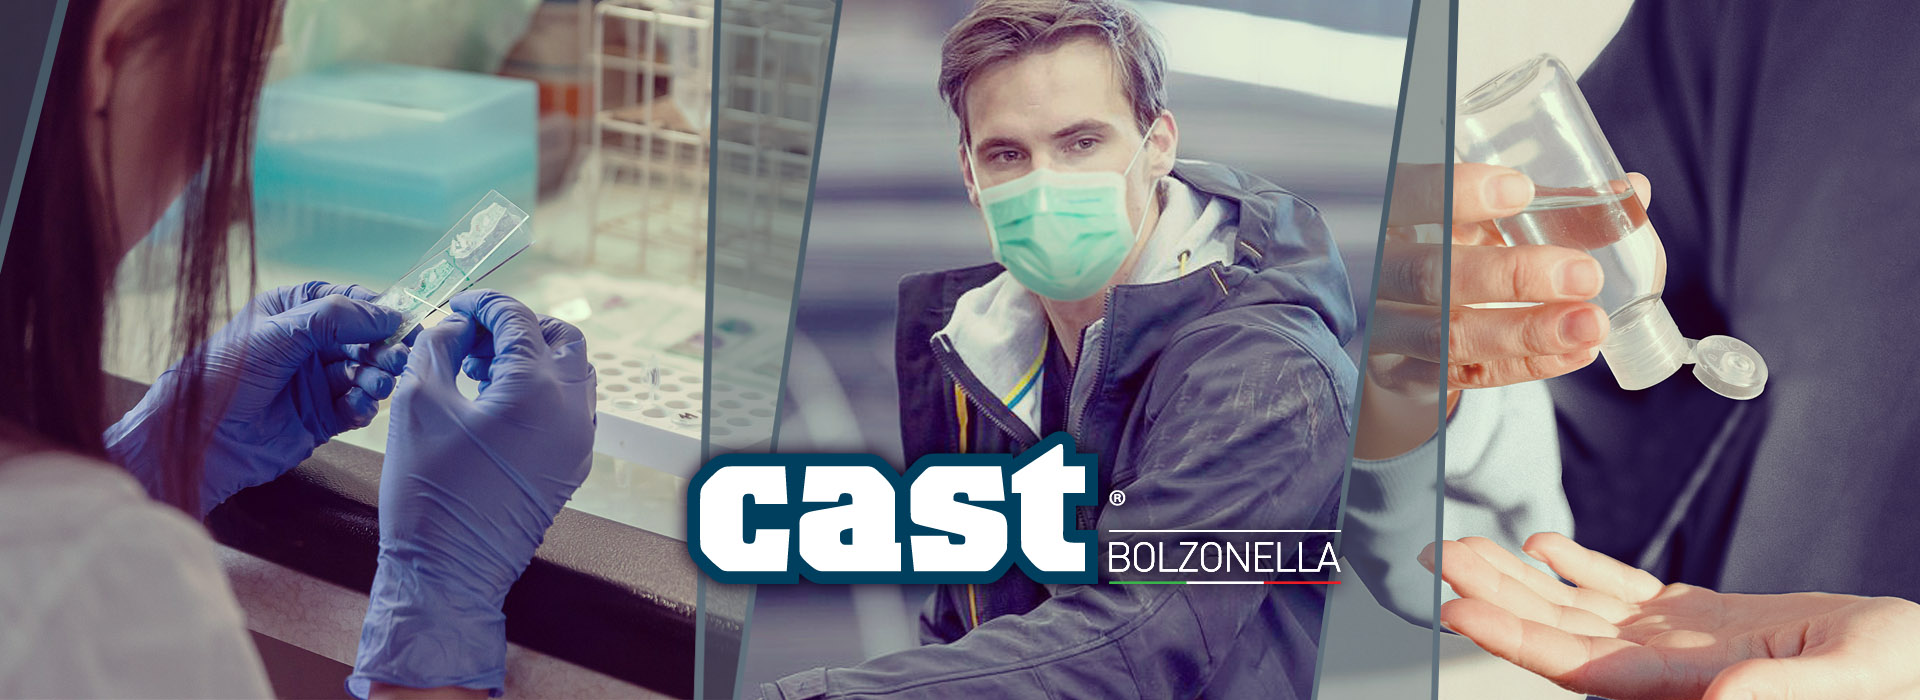 Hand sanitizer gel | Cast Bolzonella